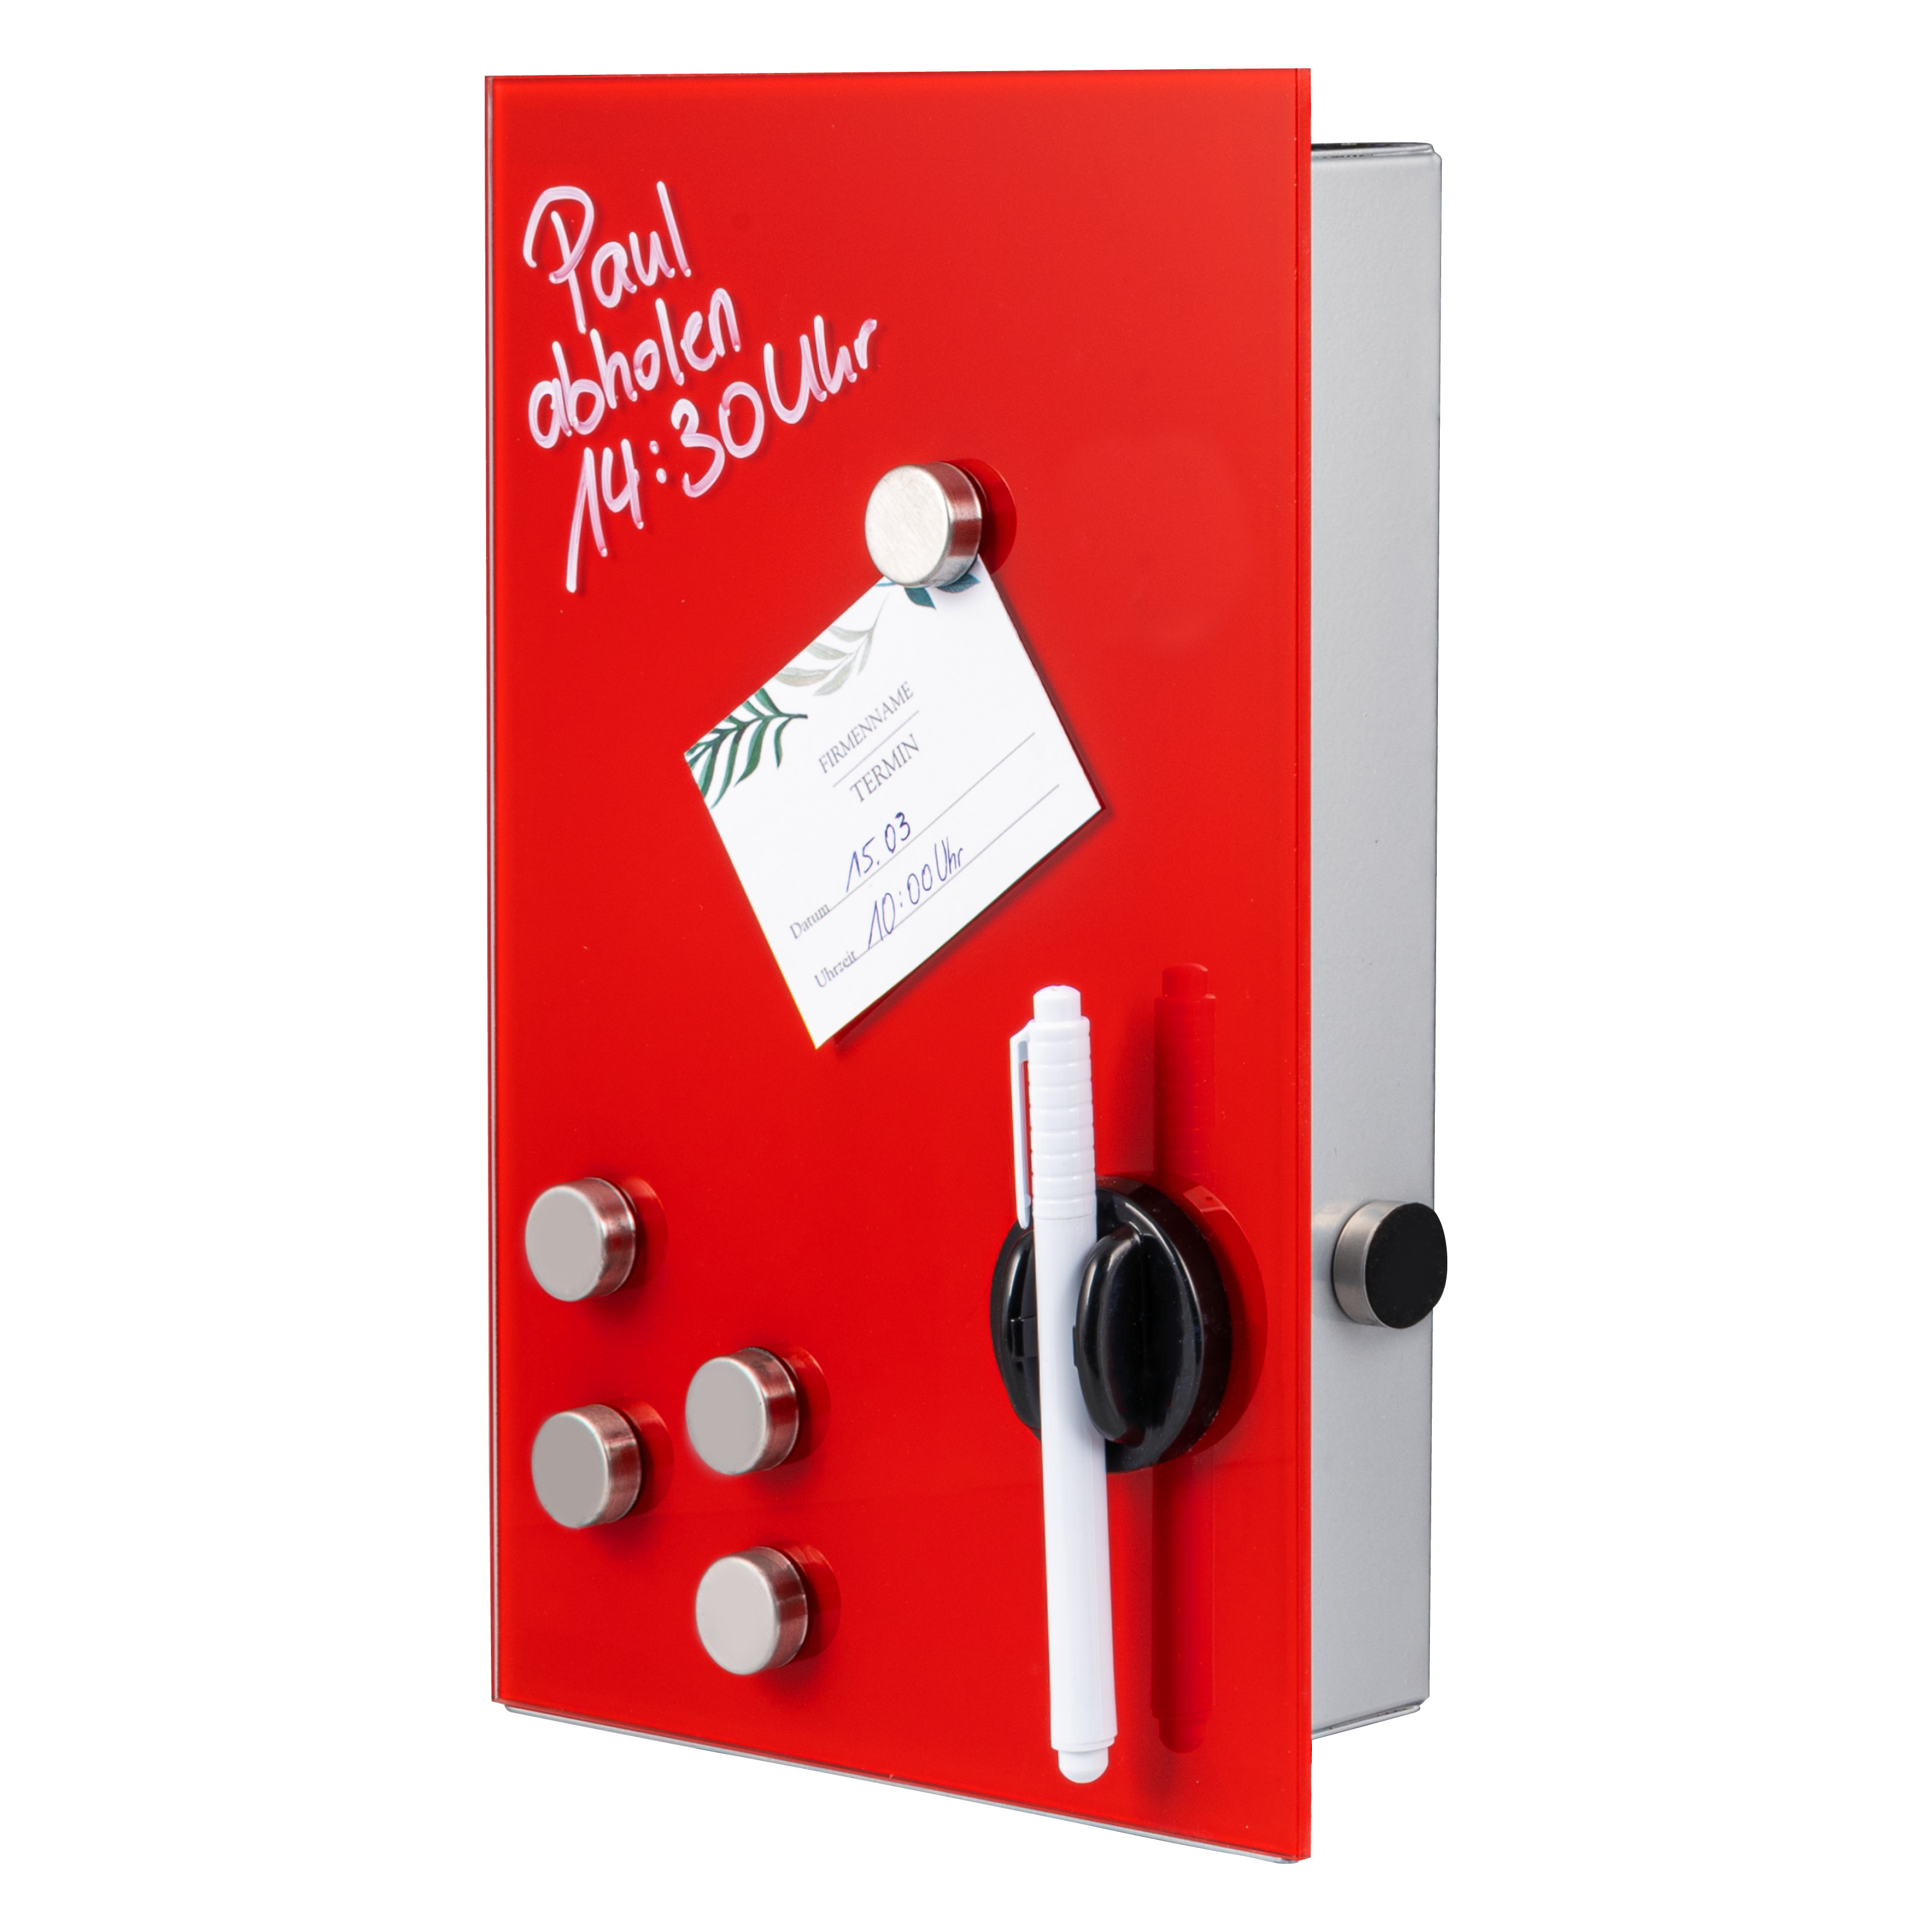 Schlüsselkasten mit roter Glasfront, beschreibbar, 8 Haken, 6 Magnete, 1 Marker,1 Marker-Halter, Korpus aus Metall grau pulverbeschichtet